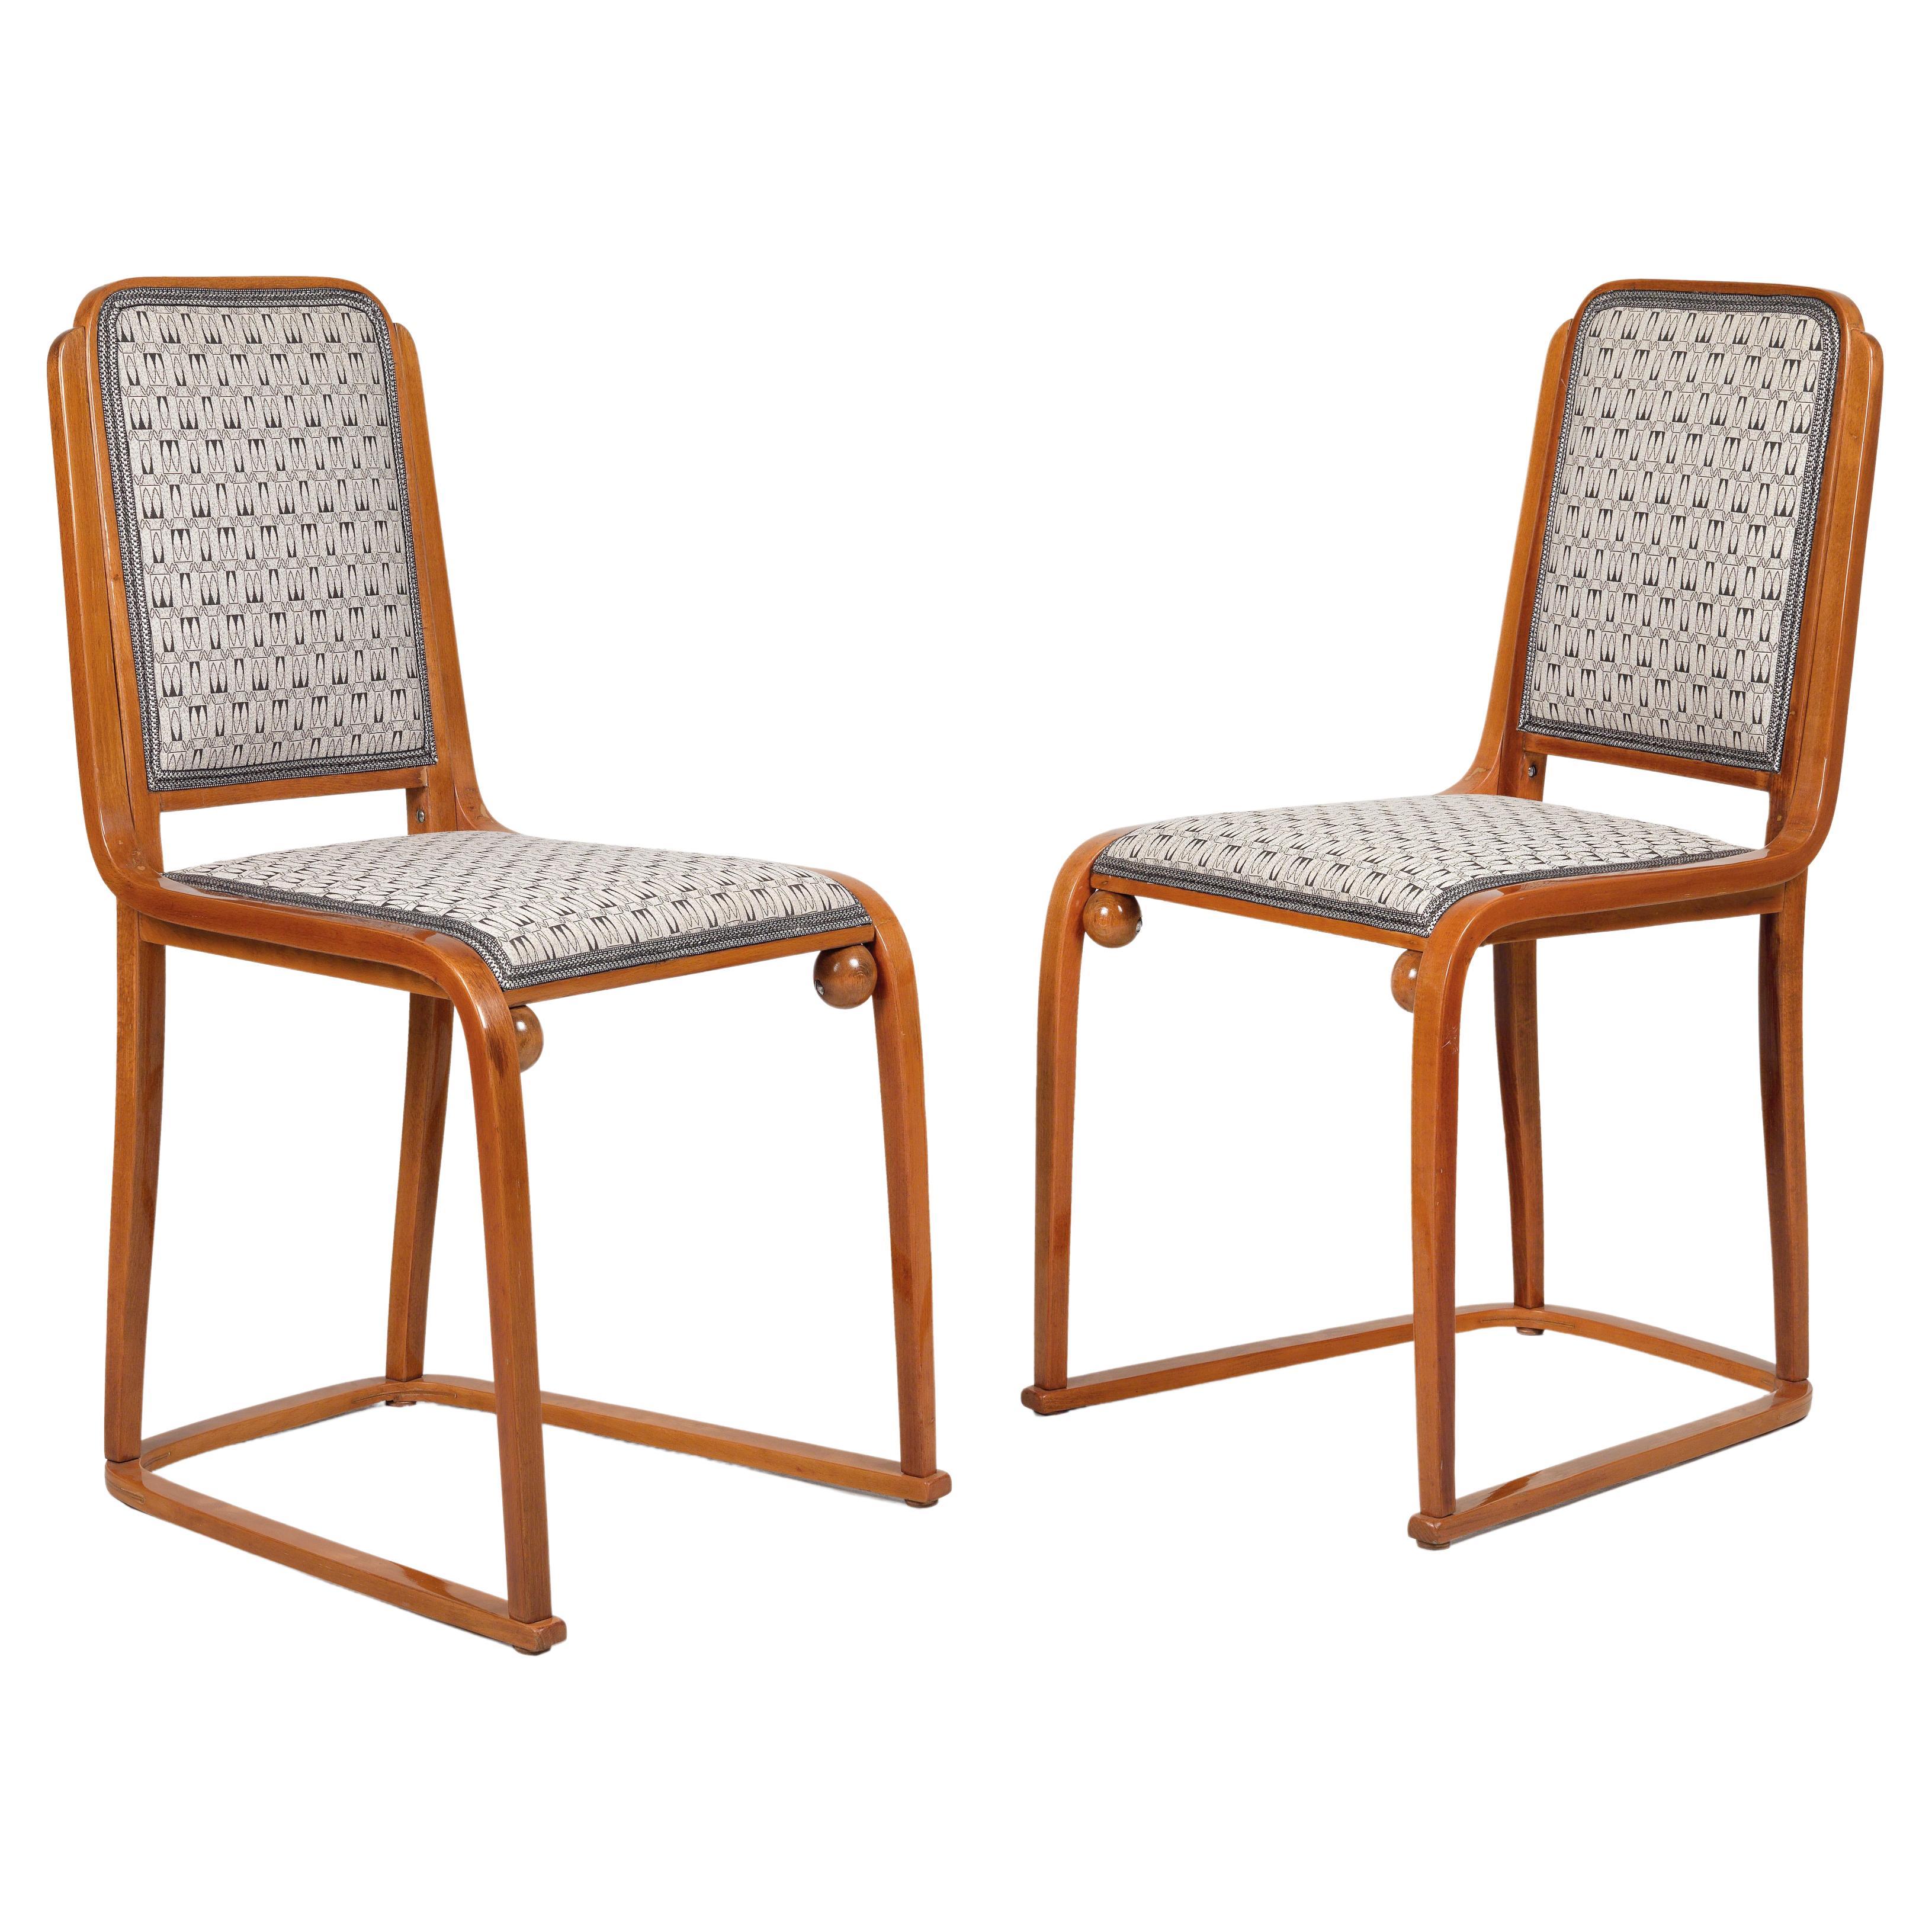 Originale aus der Zeit von 1905, Paar Stühle von Josef Hoffmann und Jacob &Josef Kohn